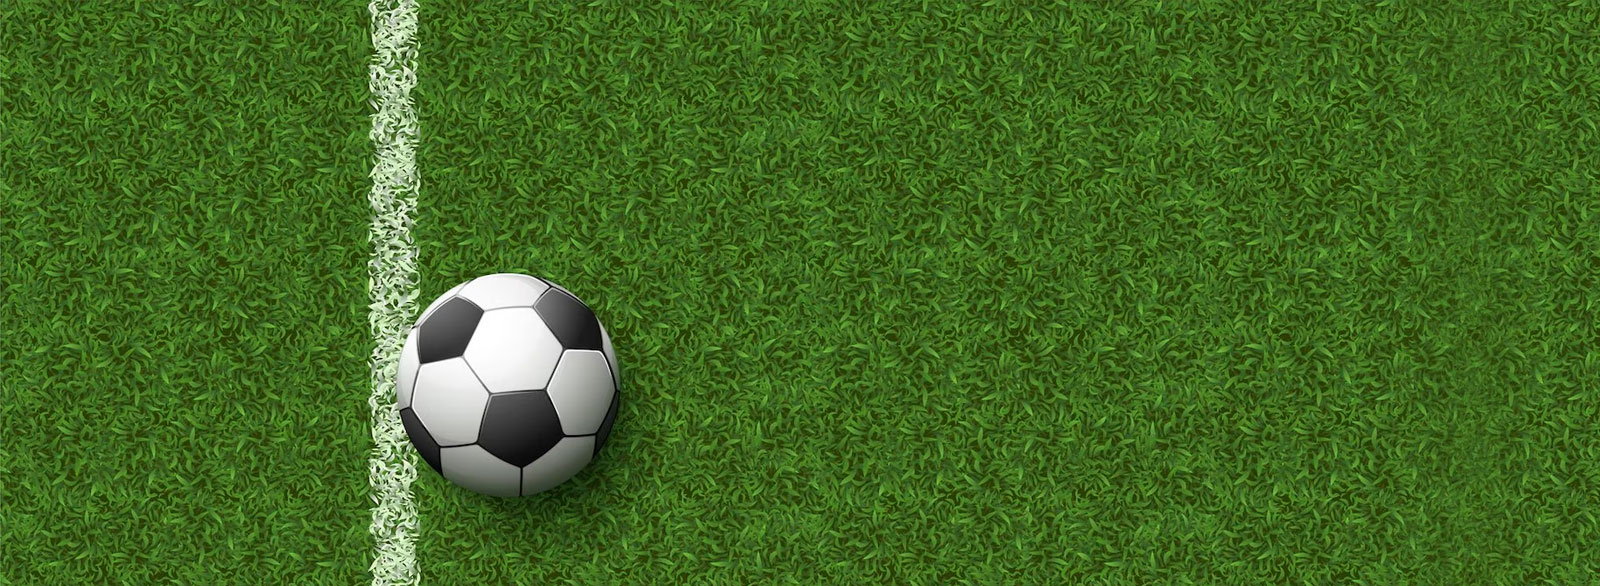 Советы по выбору искусственного газона для футбола